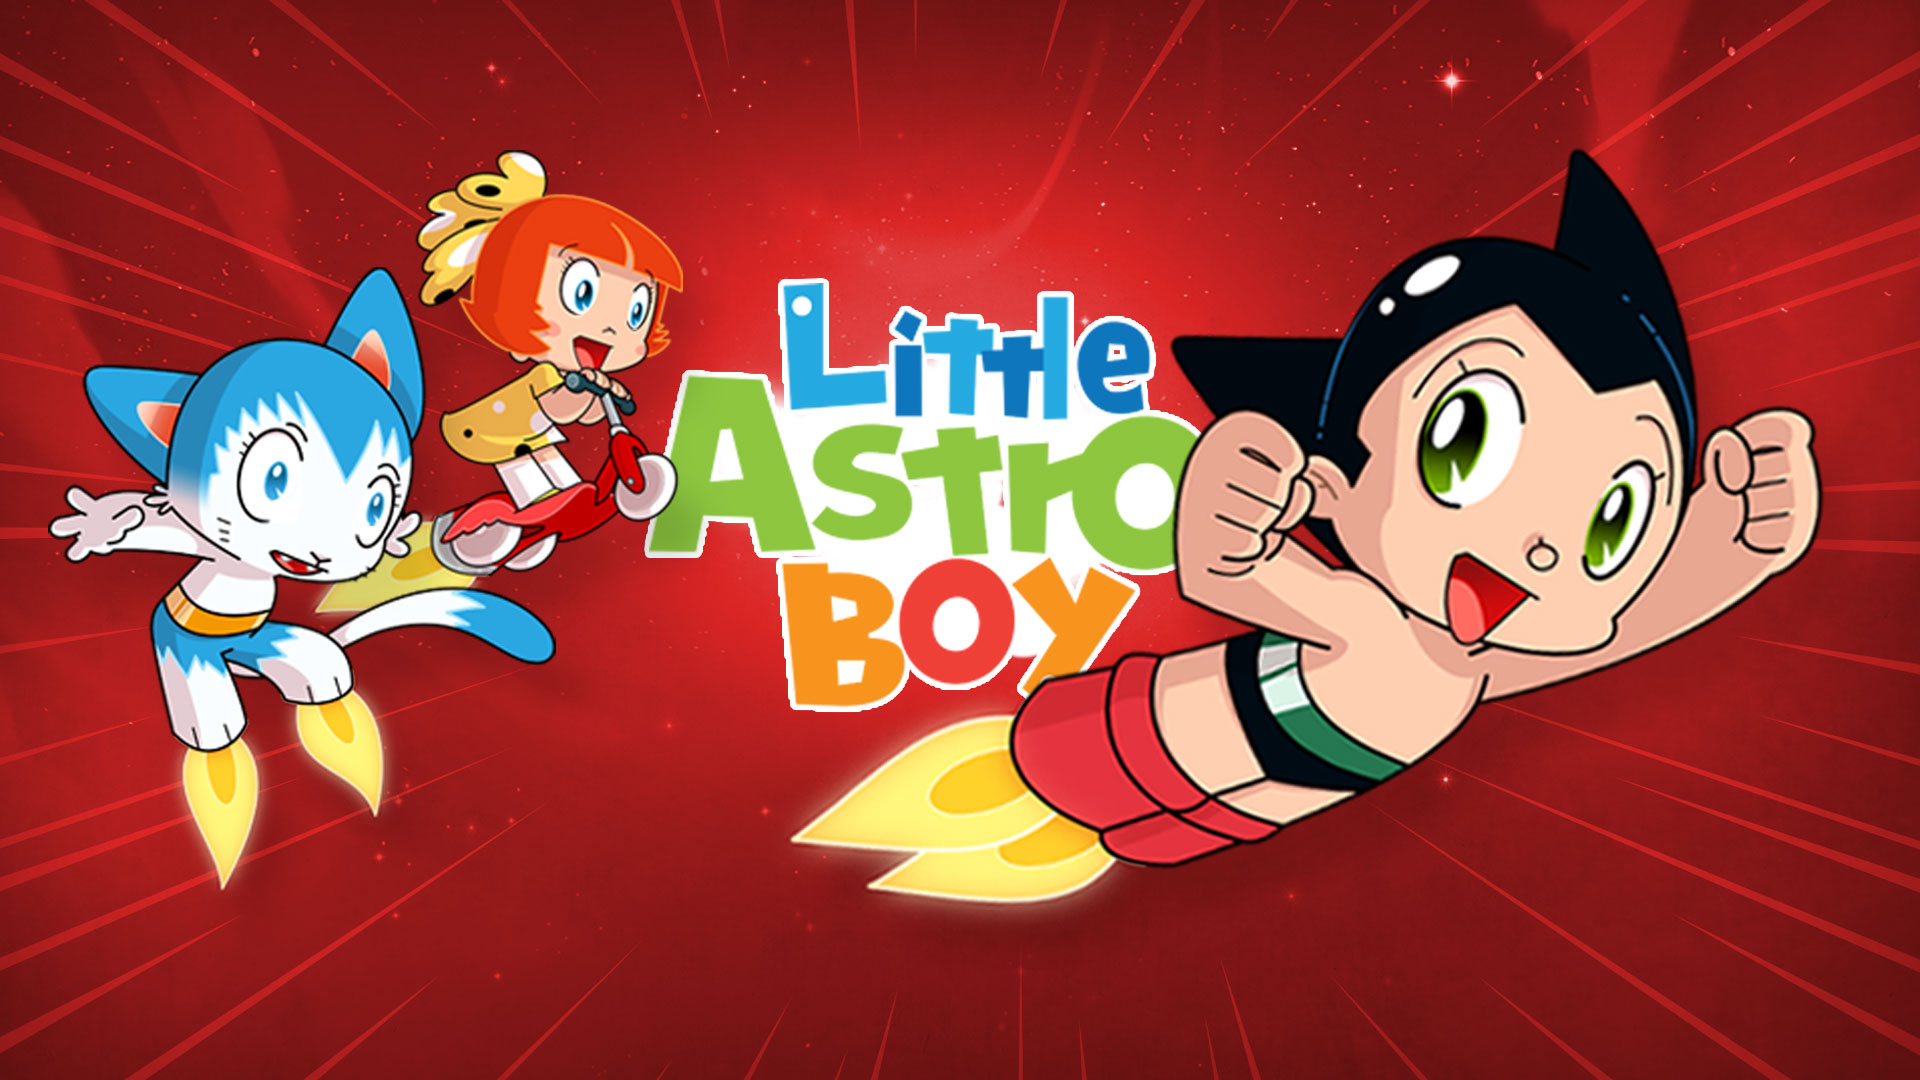 Little Astro Boy 2019 - HD Wallpaper 